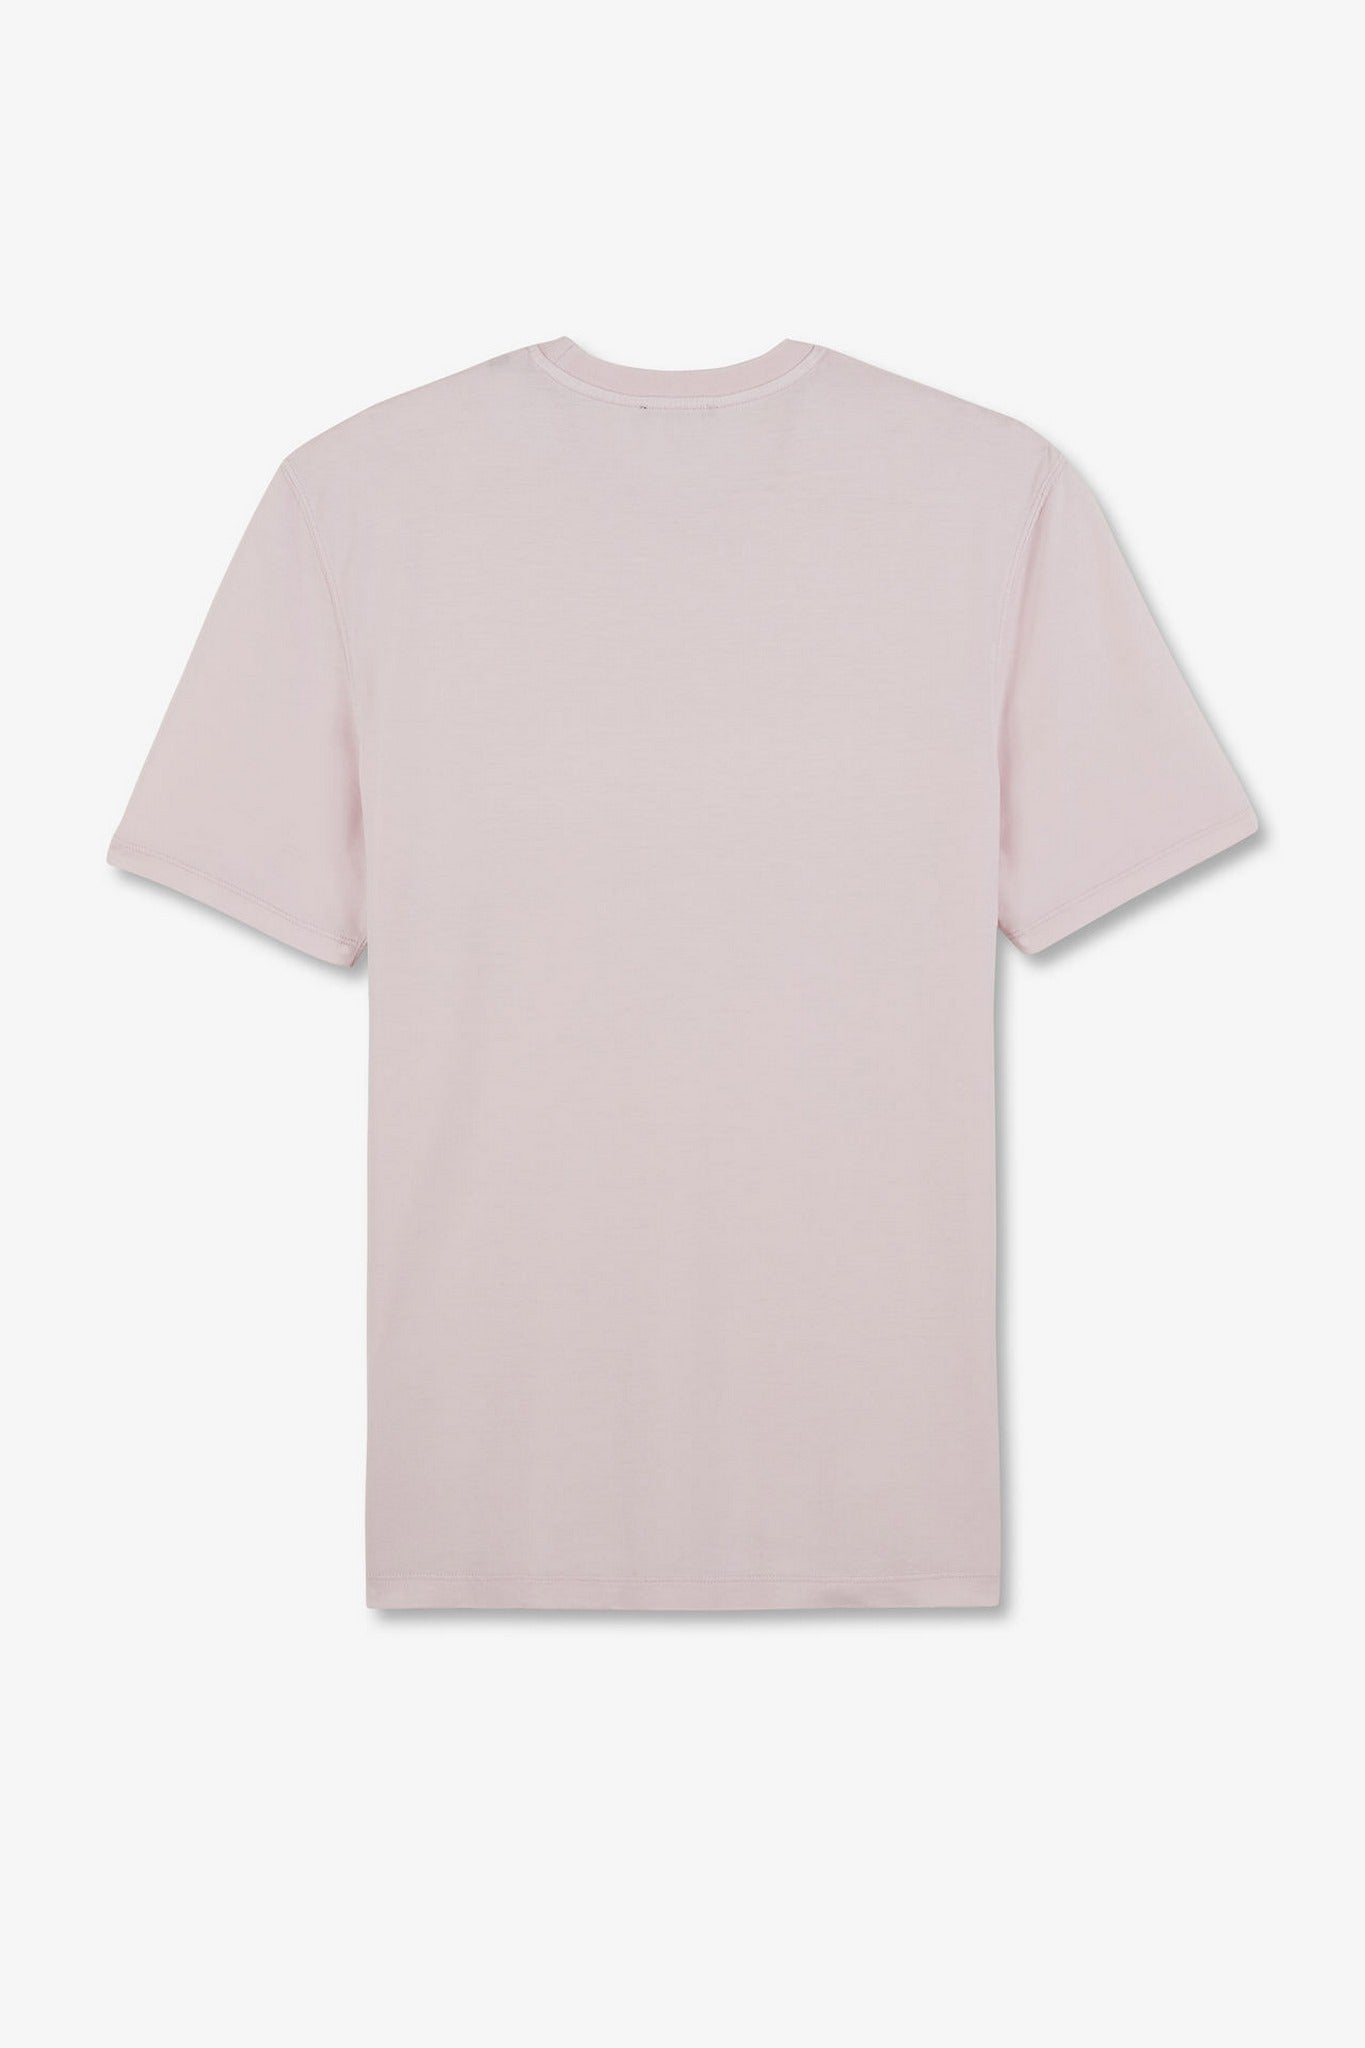 T-shirt manches courtes rose uni